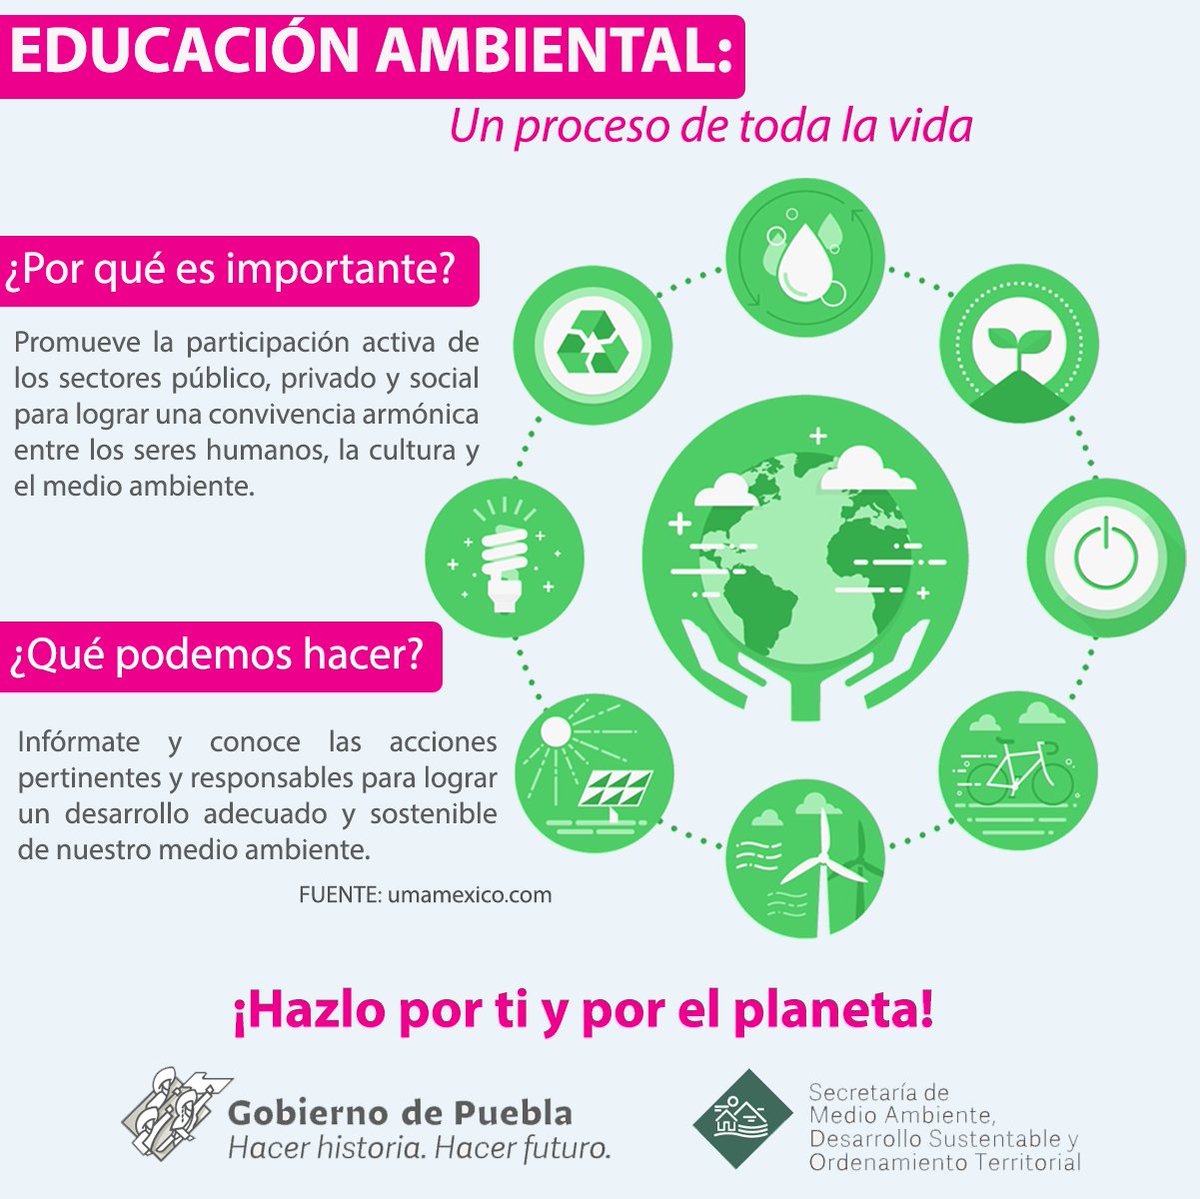 repentinamente Franco Confusión Secretaría de Medio Ambiente on Twitter: "Conoce la importancia de la  #EducaciónAmbiental 👩🏫🍃y cómo puedes contribuir a mejorar nuestro medio  ambiente 🌎✓. ¡Súmate con pequeñas acciones, que generan grandes cambios!  😄💚 https://t.co/L2B0CVIHXm" /